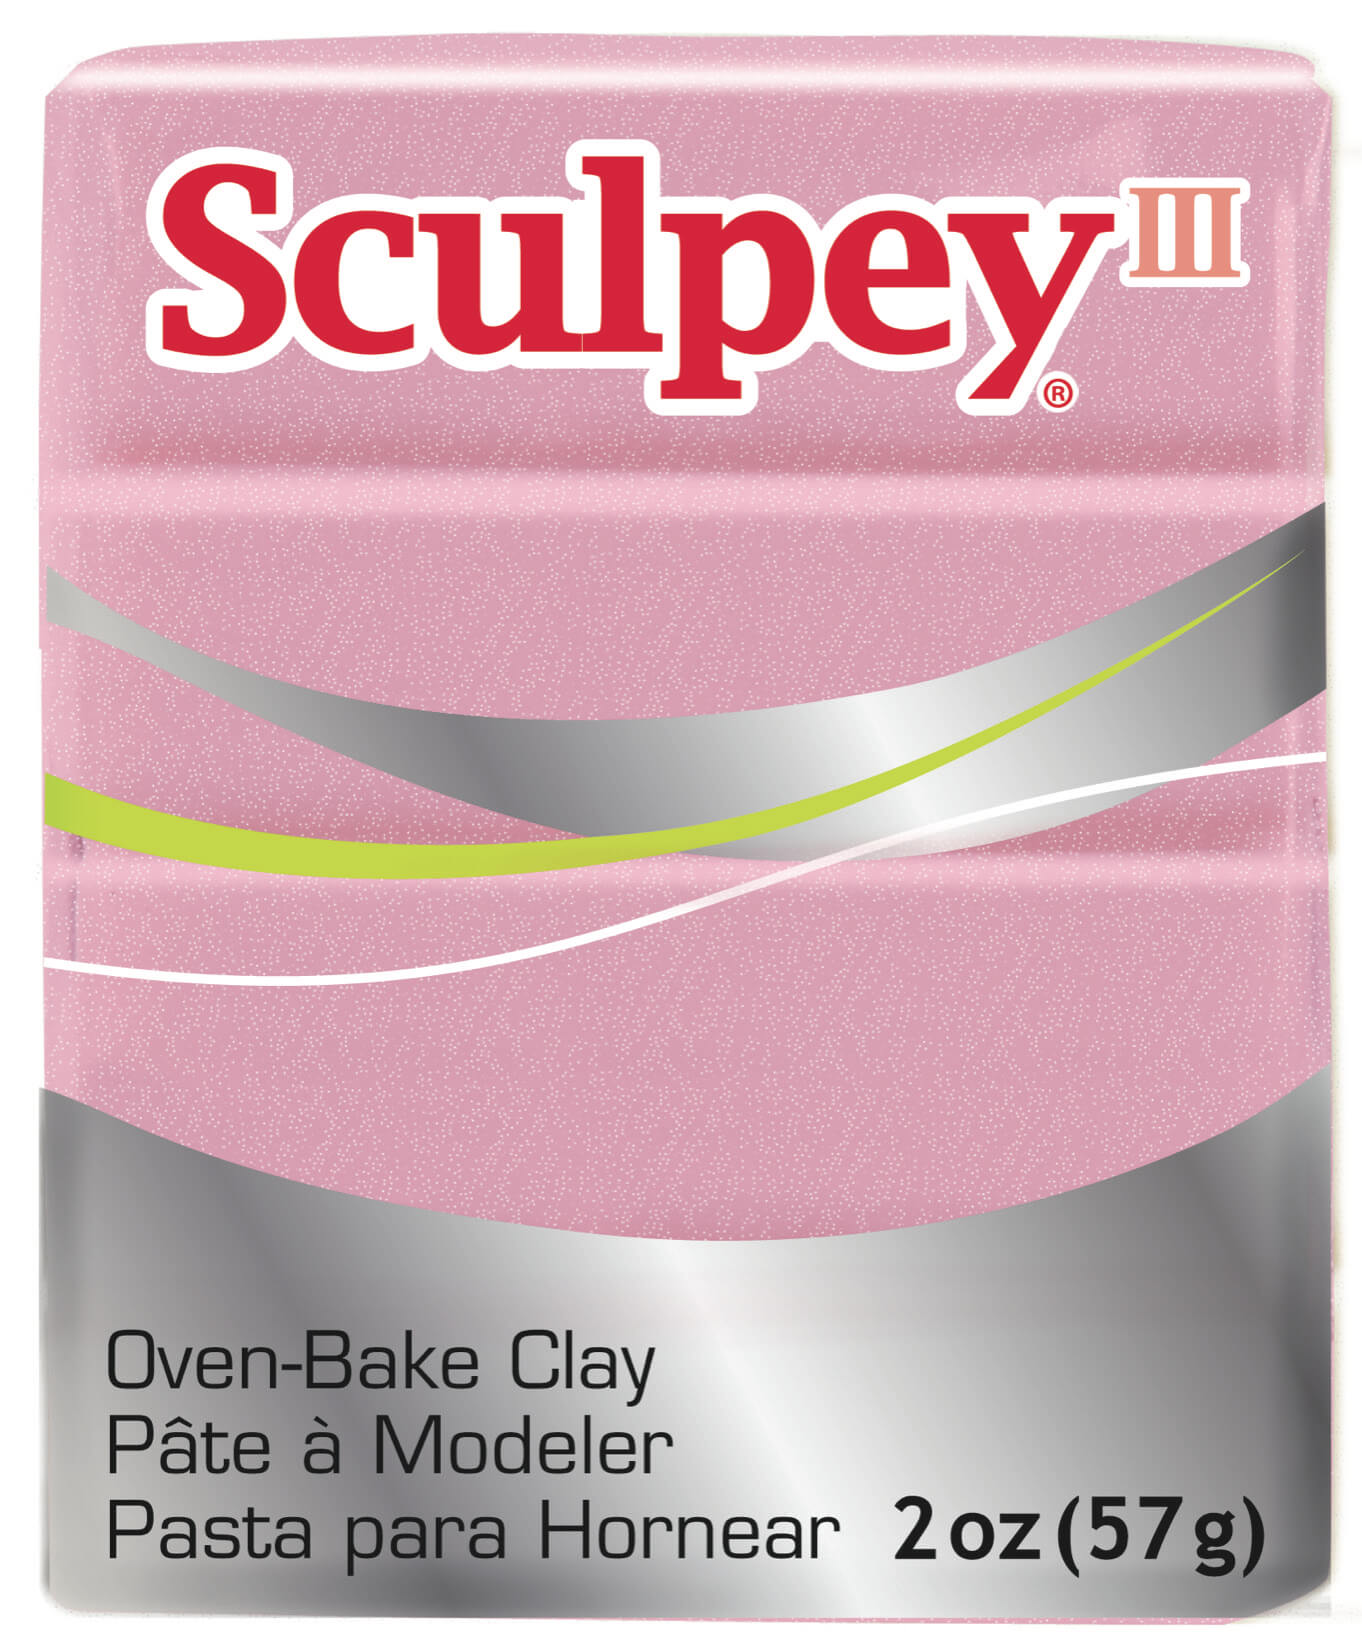 Sculpey III Clay 2 oz. Chocolate